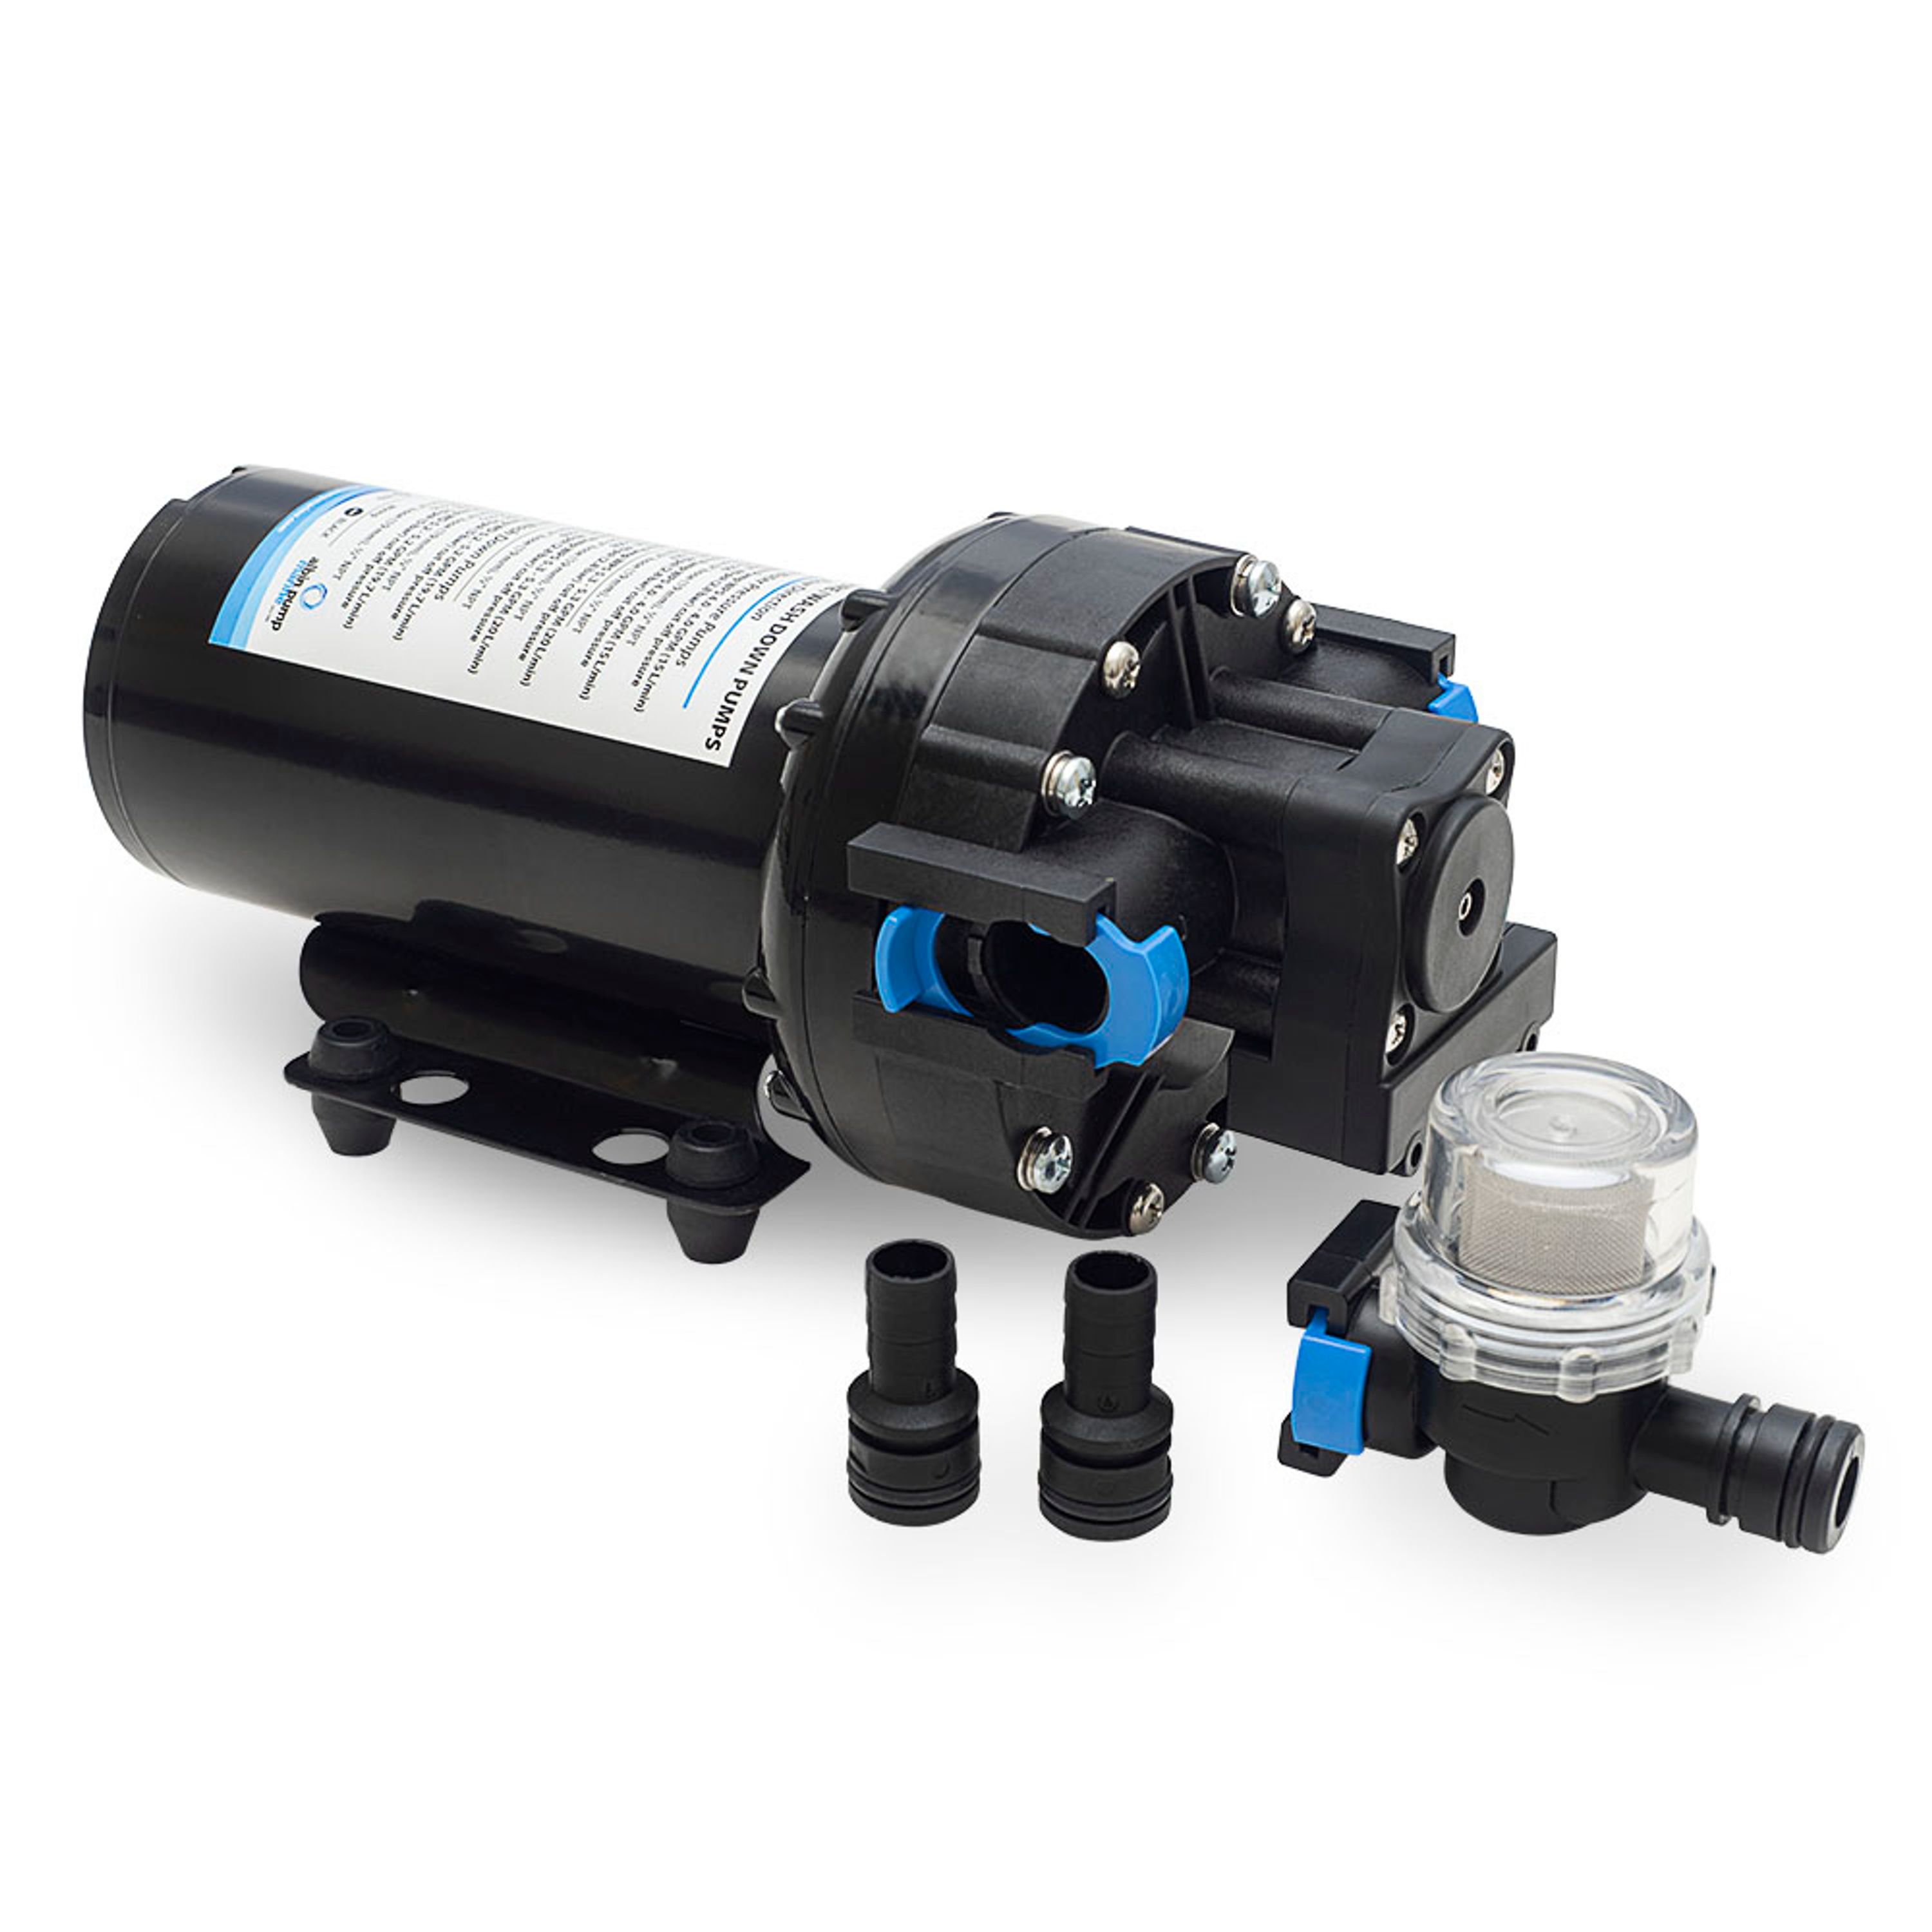 Water pressure pump wps 5.3 24v